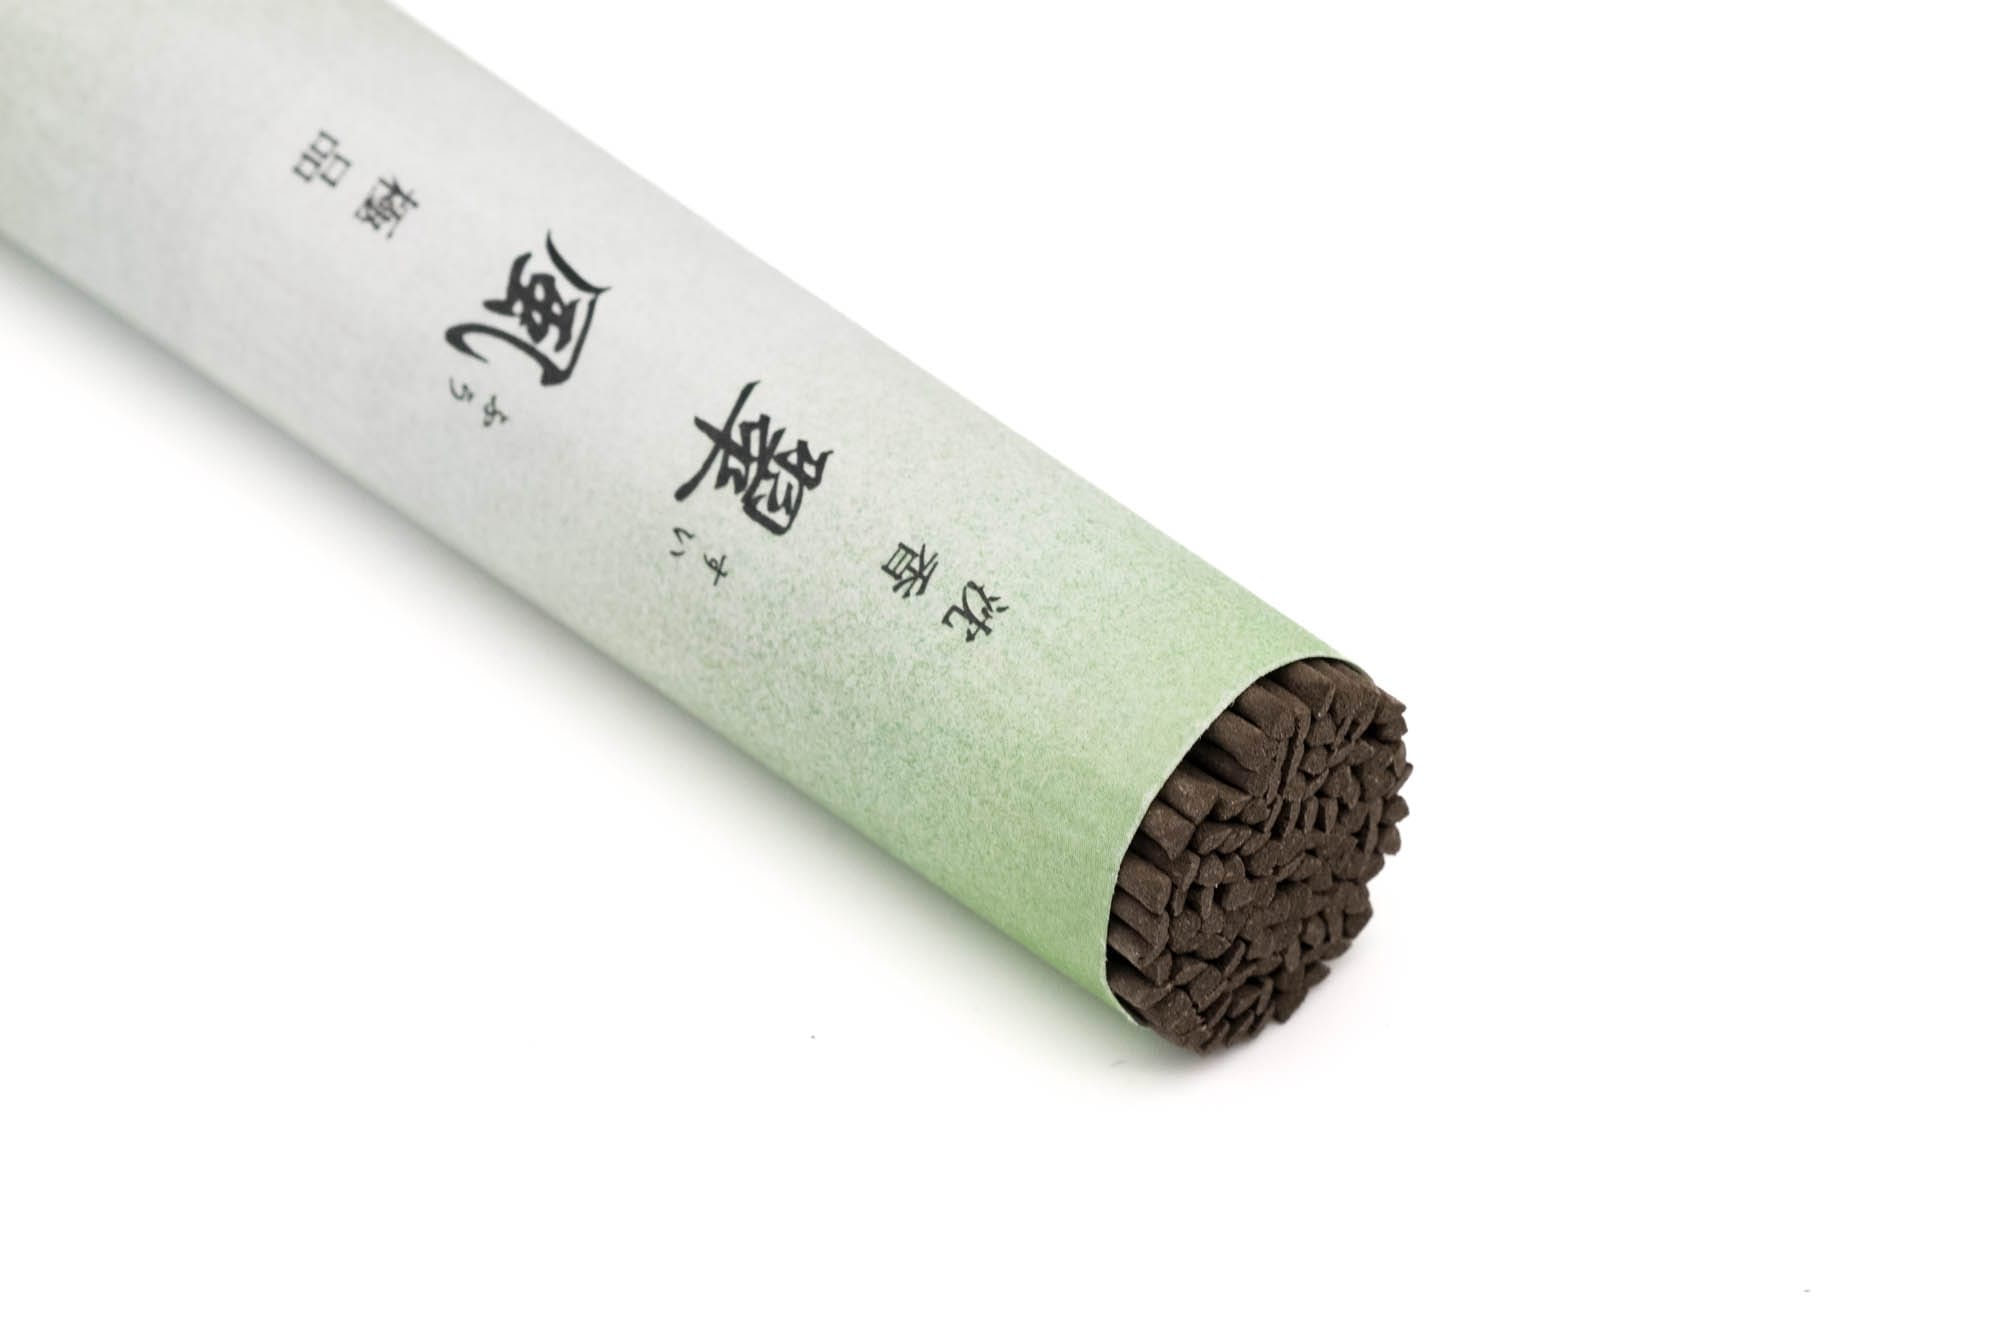 山田松 Yamadamatsu - Suifu Gokuhin Aloeswood Incense Sticks